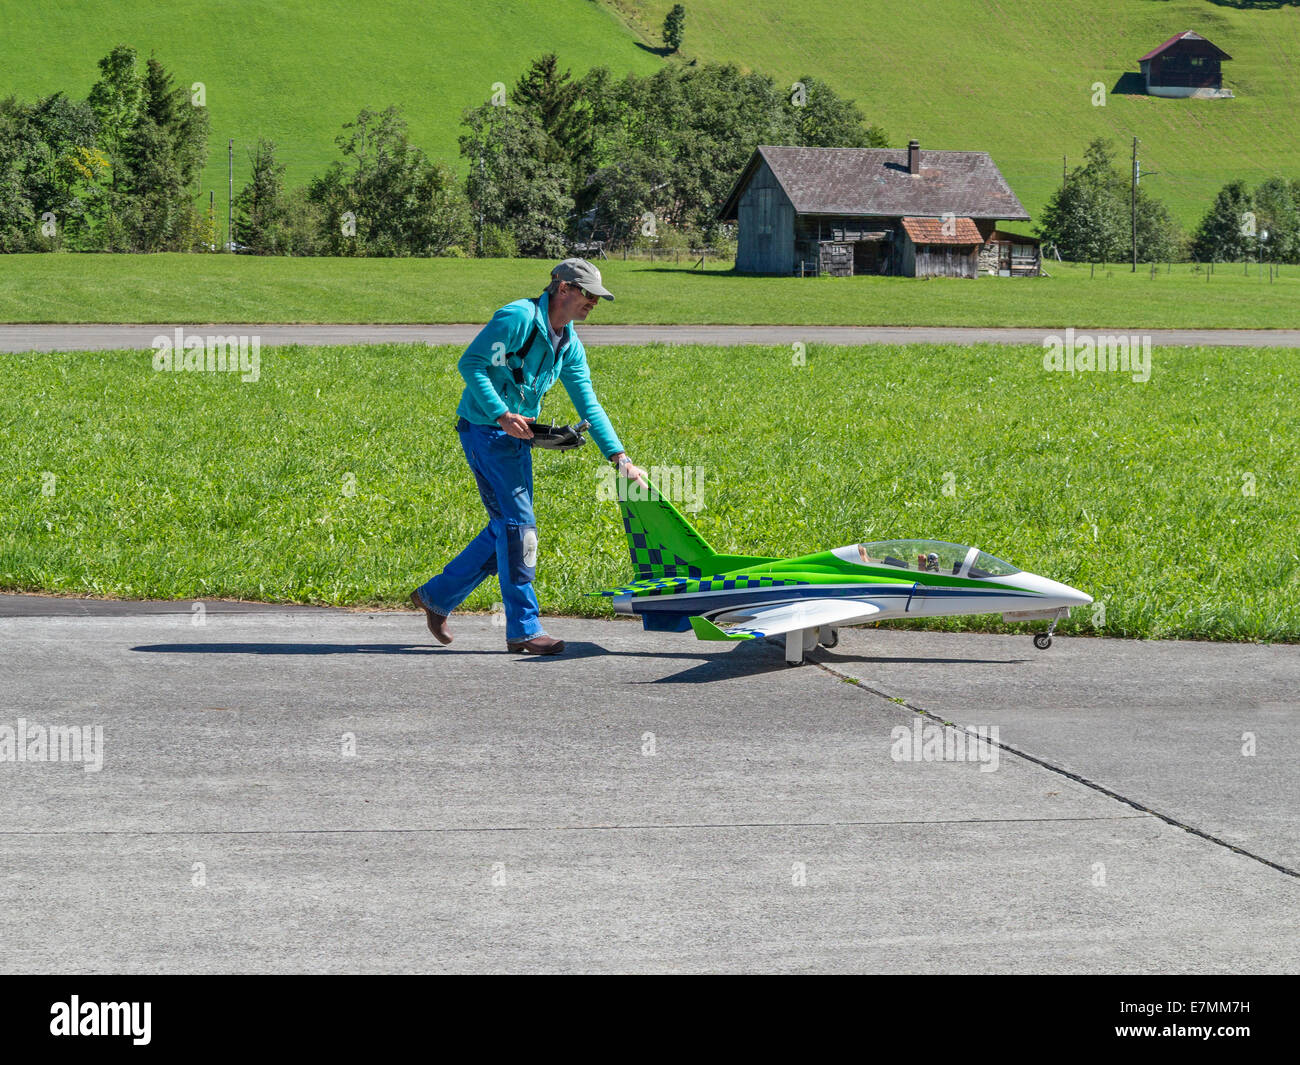 Modèle réduit d'aéronef enthusiast wheeling son avion à réaction hors prêt à voler Banque D'Images